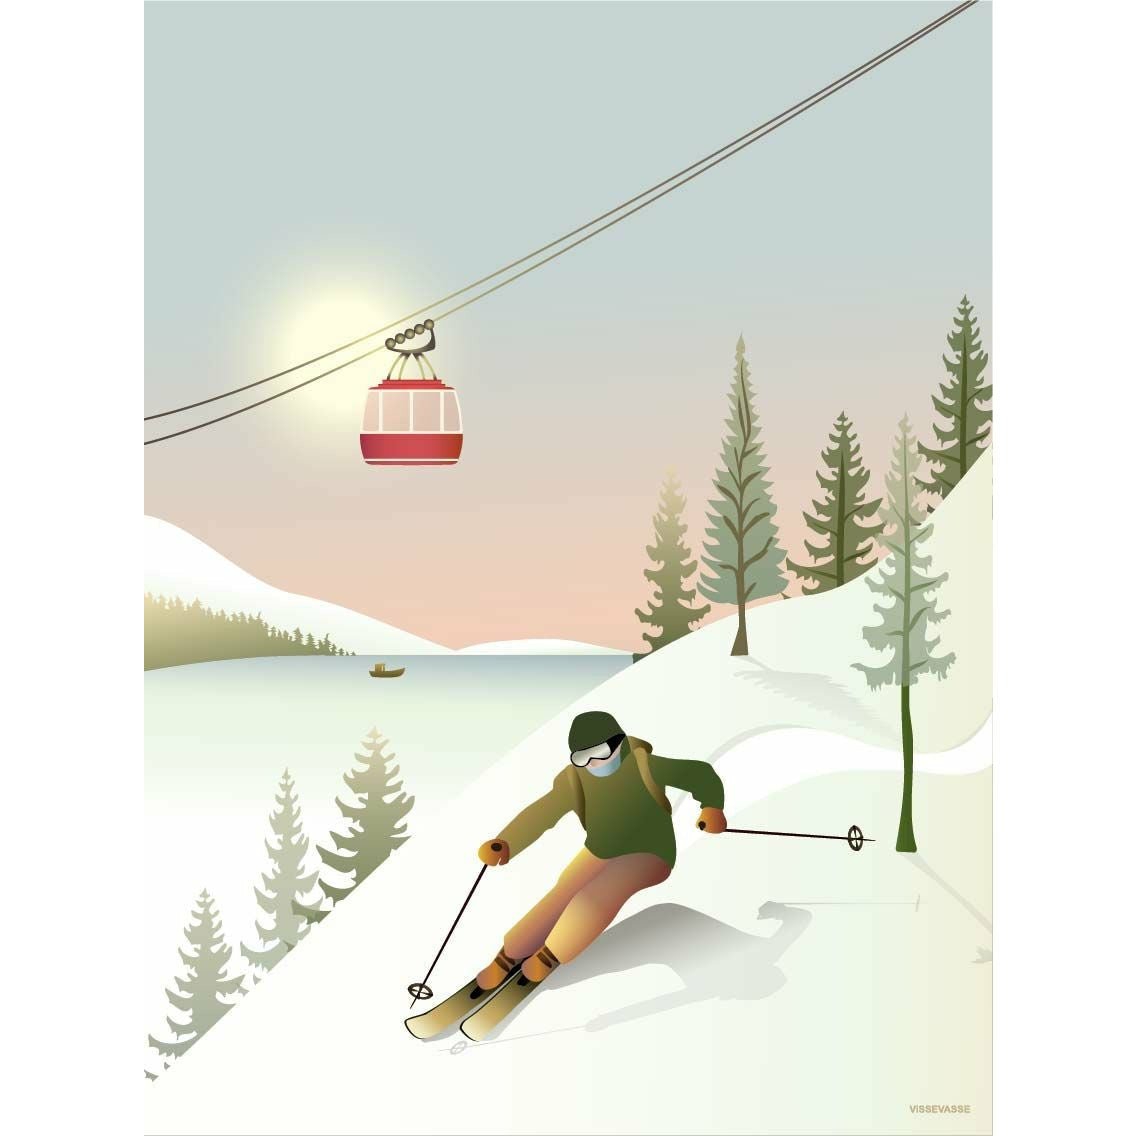 Vissevasse Offpiste Skiing Plakat, 15x21 cm